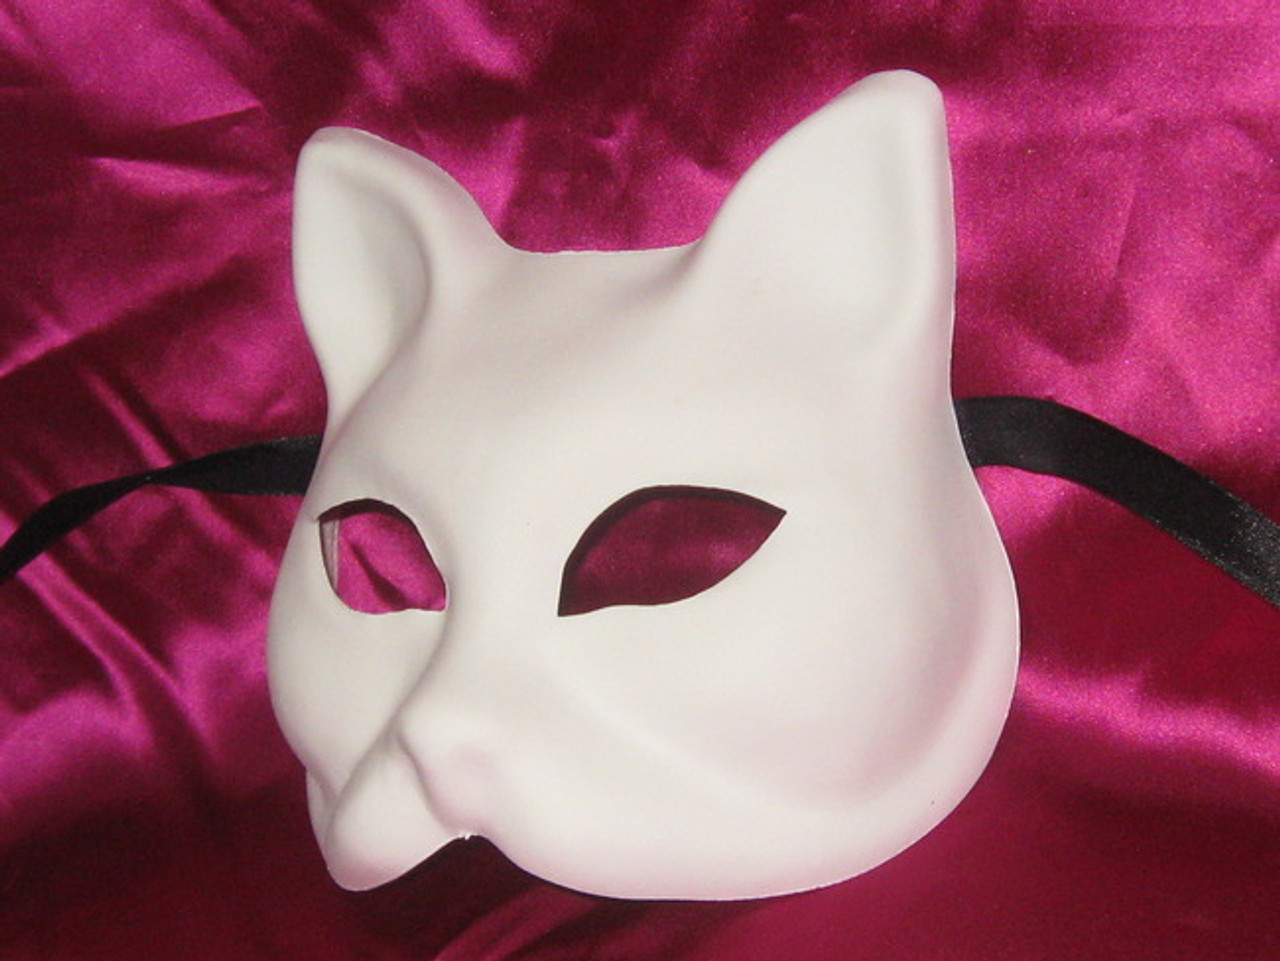 Sexy Cat Mask Blank Cat Mask Gatto Mask Women Leather Cat Mask